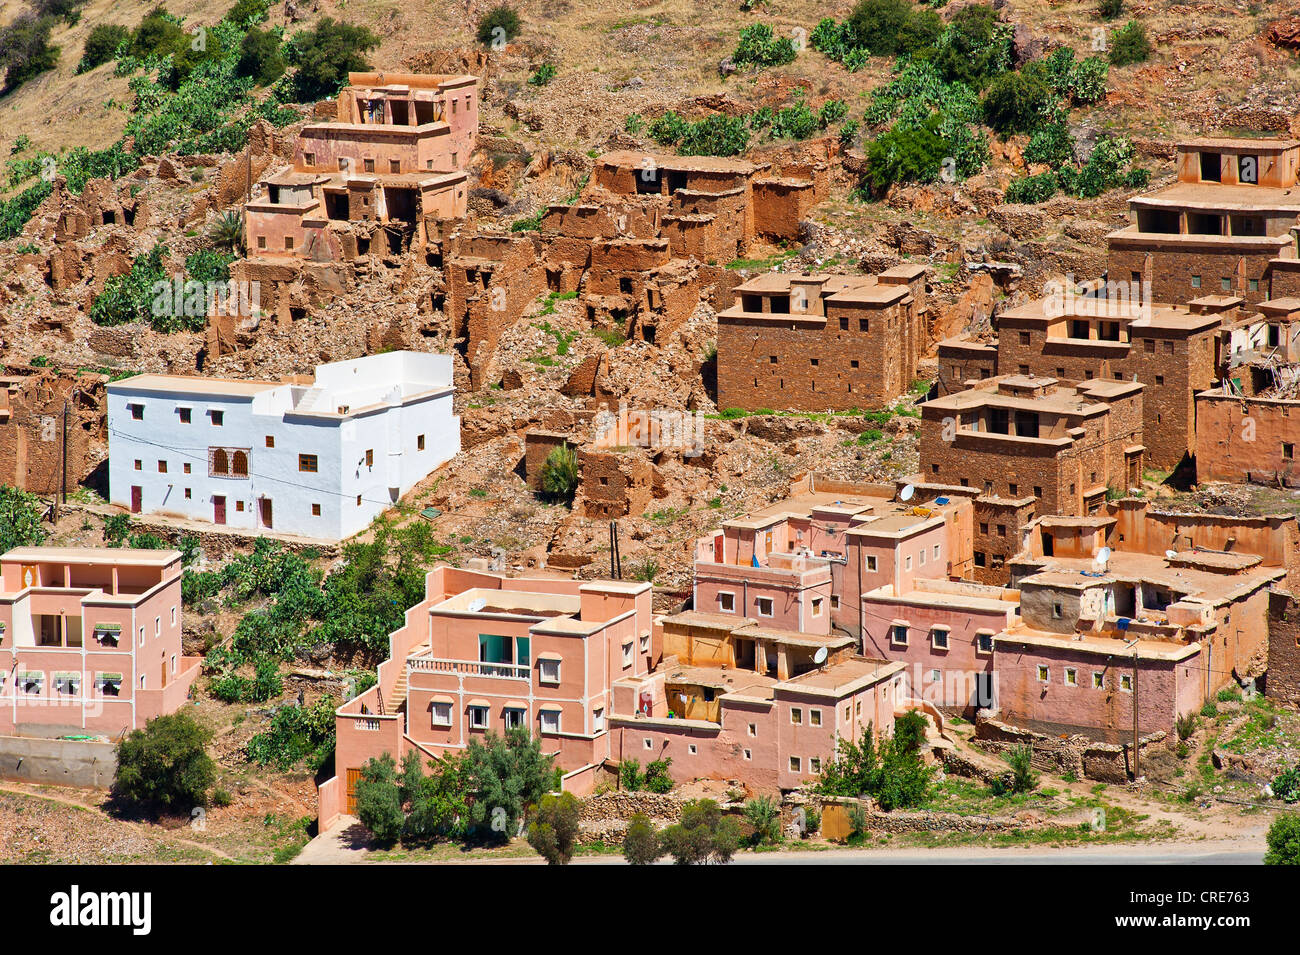 Village traditionnel typique avec des maisons peintes de couleurs vives les Berbères dans l'Anti-Atlas, dans le sud du Maroc, Maroc Banque D'Images